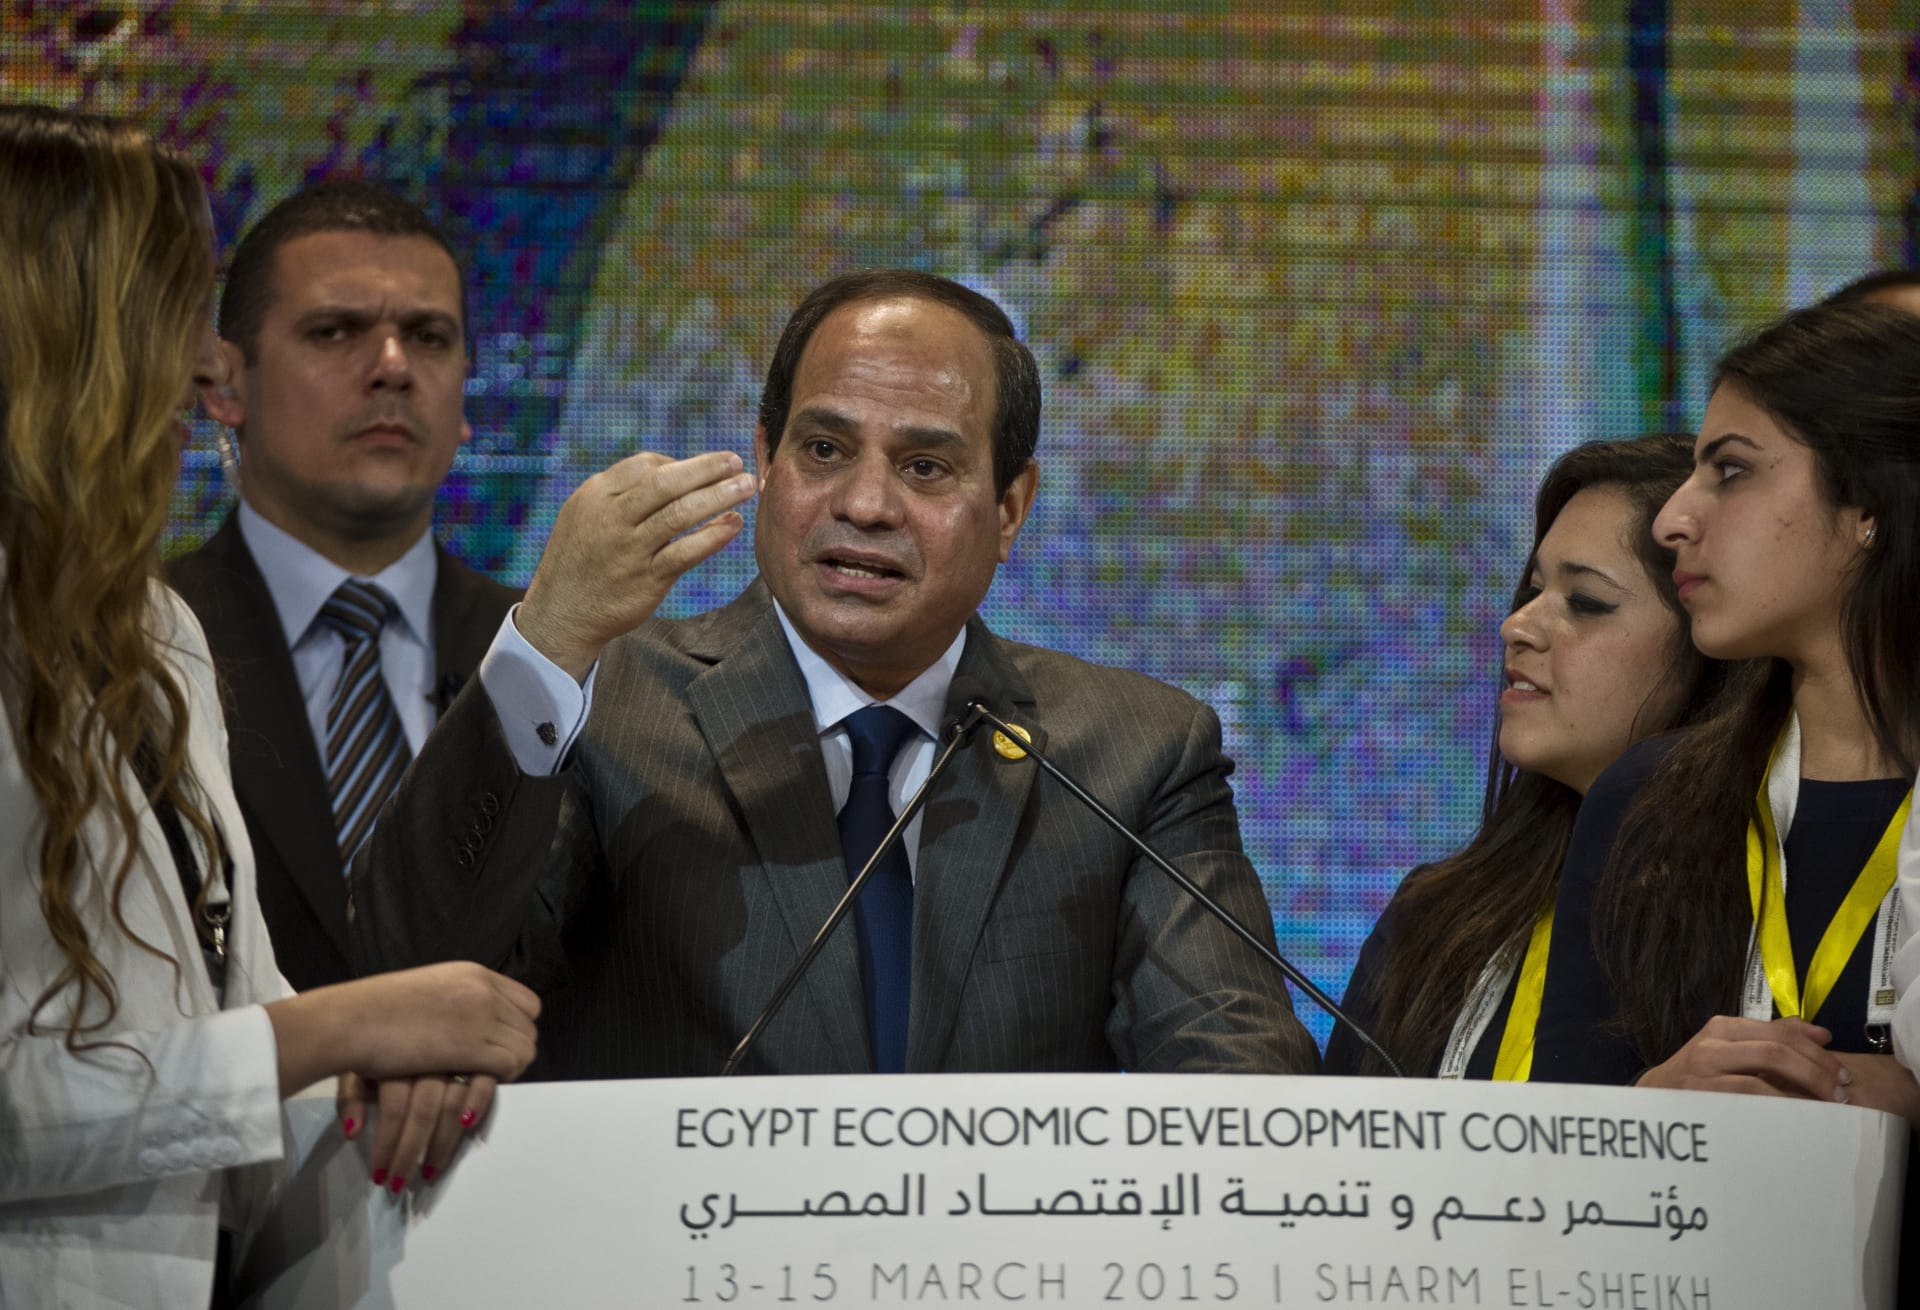 خبير بالاقتصاد السياسي المصري يكتب: مصر ورهانات التعافي الاقتصادي الخاطئة